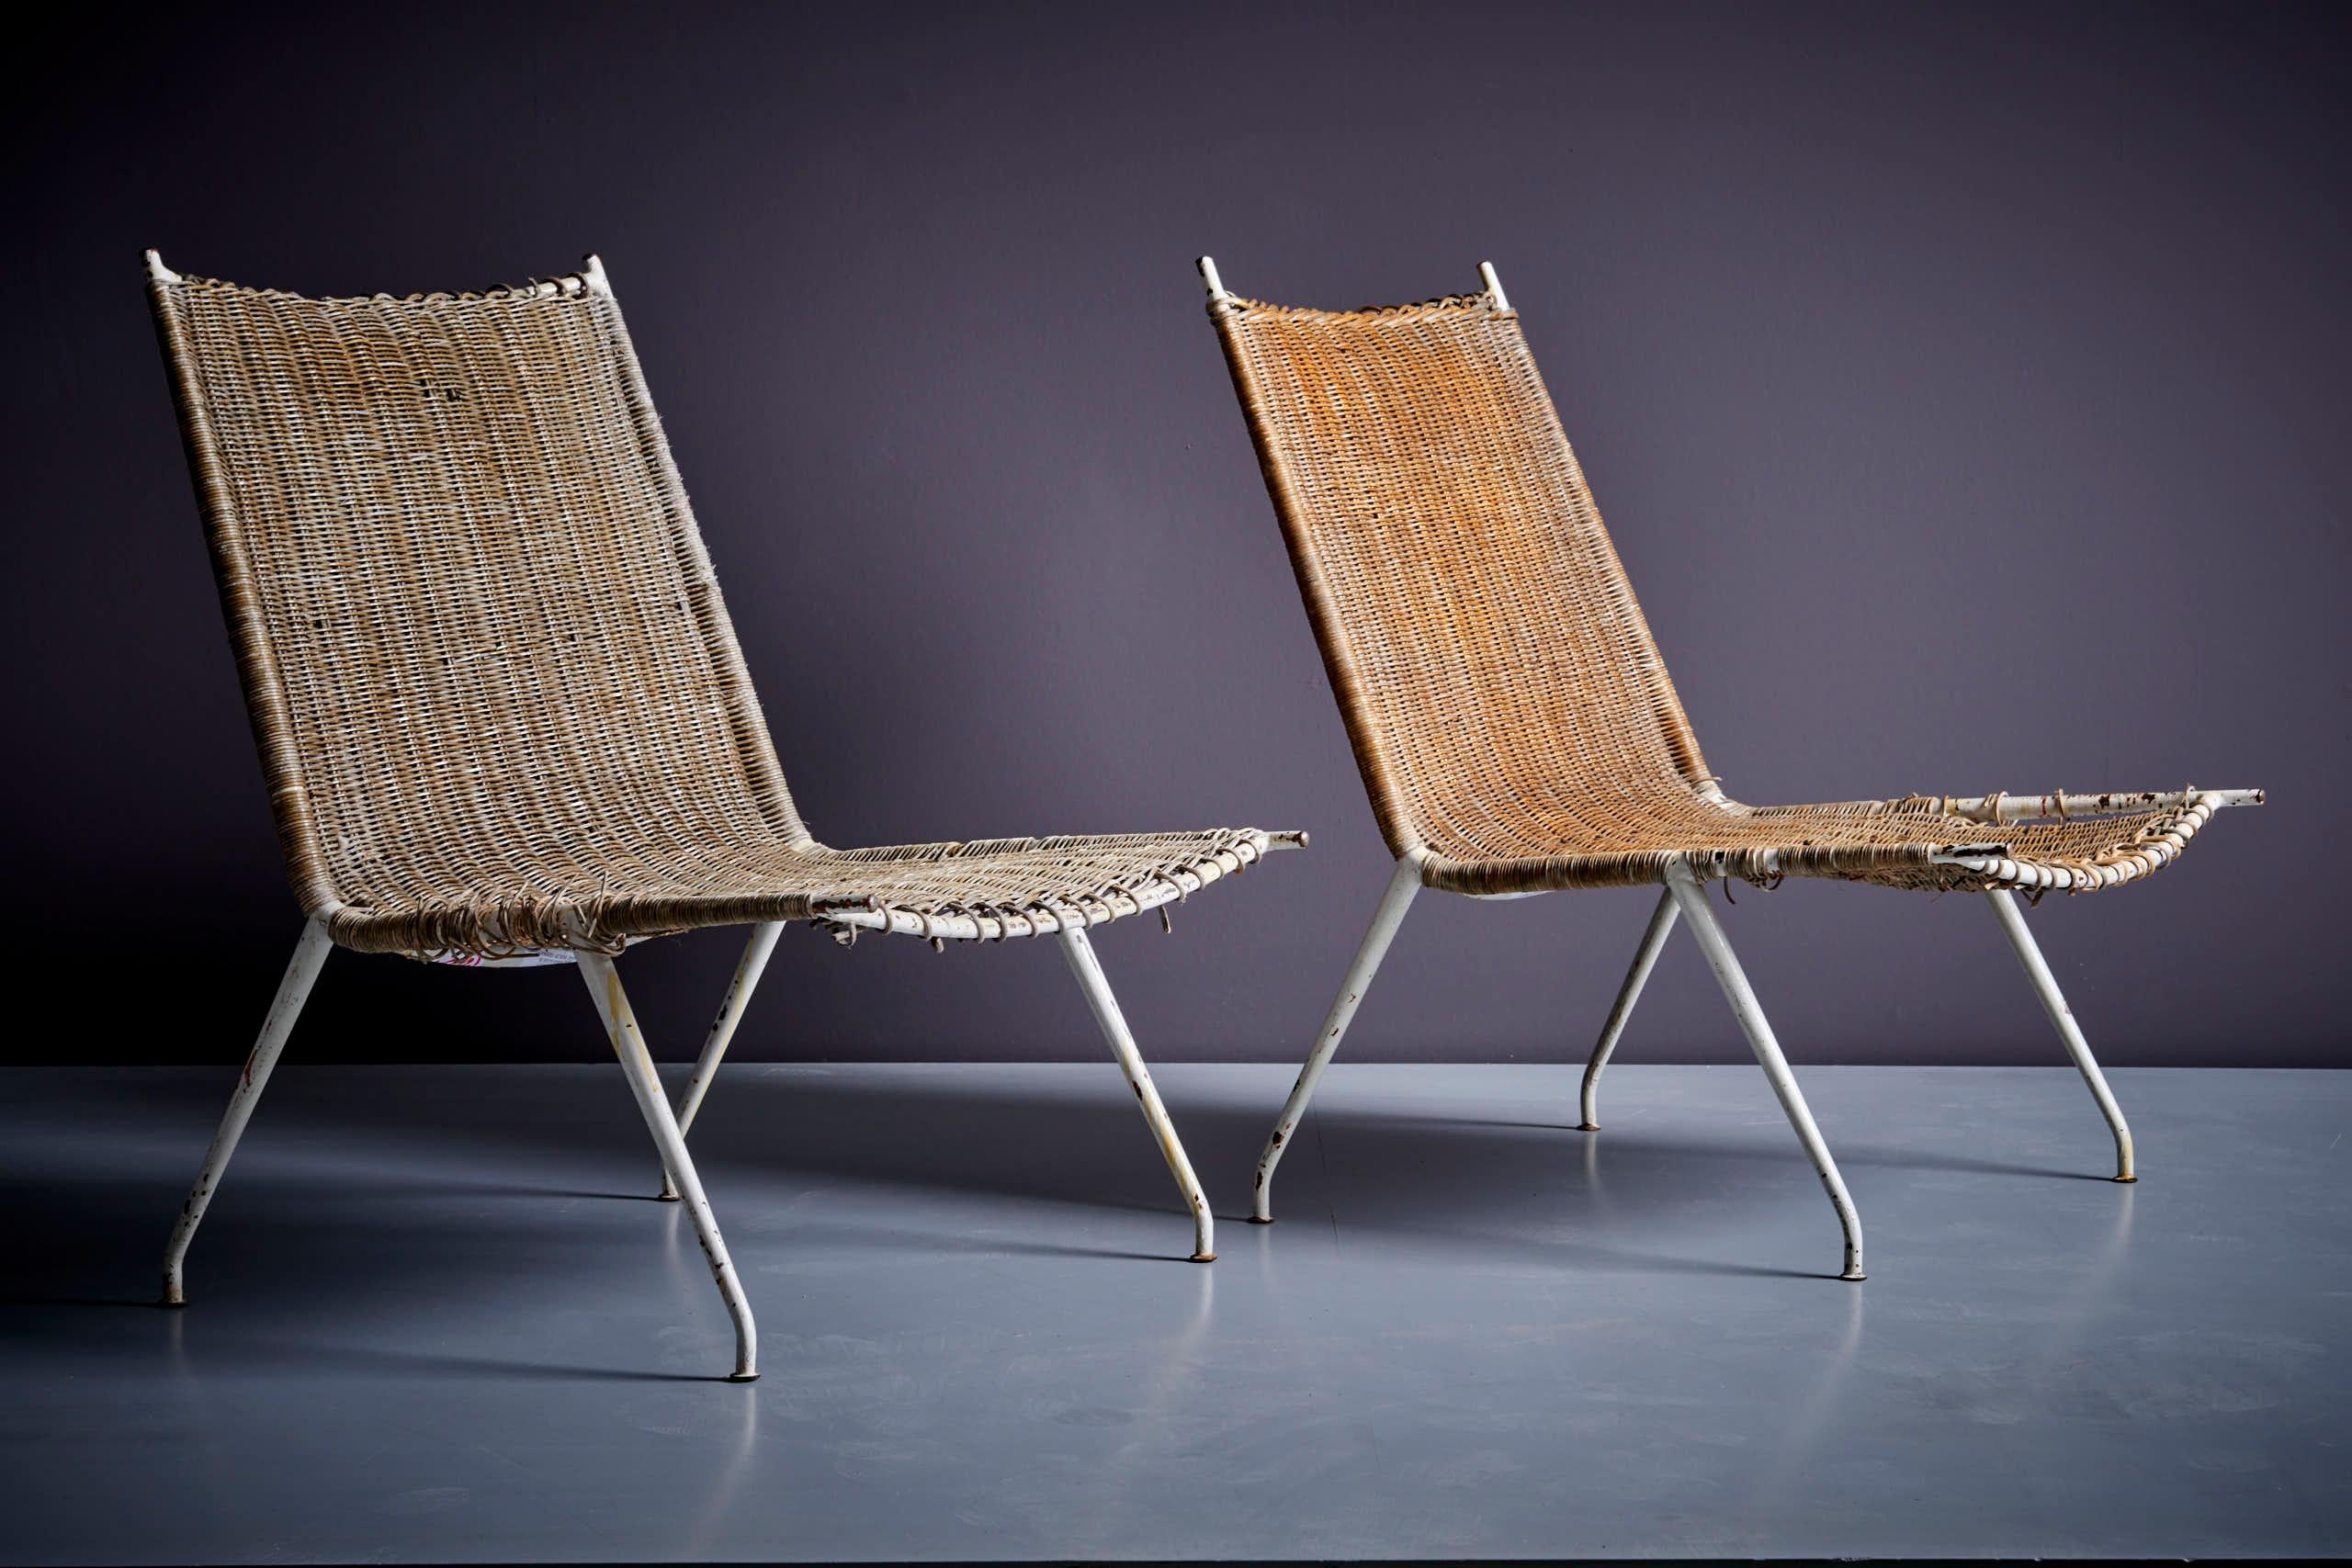 Raoul Guys für Airborne Lounge Chair Pair, Frankreich - 1950er Jahre in Rattan und Metall. Wir bieten Restaurierung und Neupolsterung in unserem hauseigenen Atelier an. Bitte fordern Sie ein Angebot an
